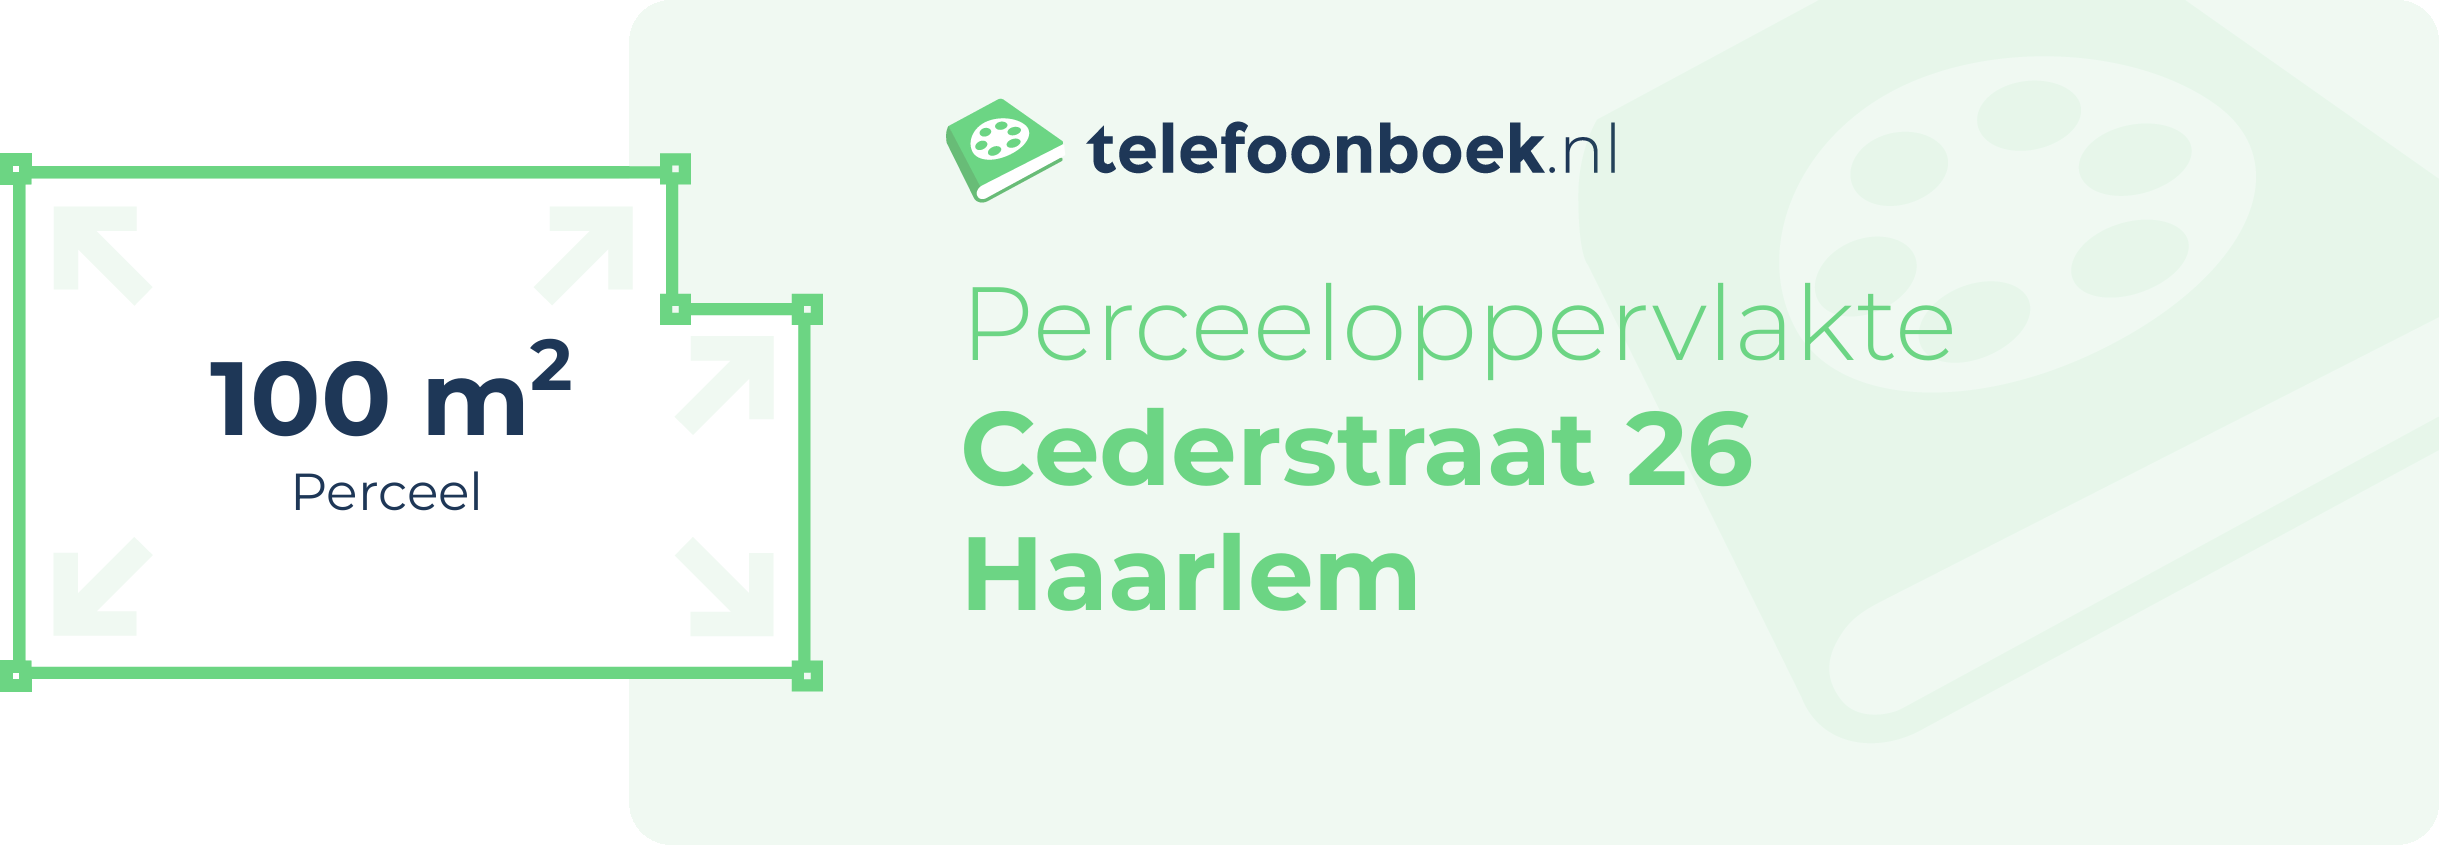 Perceeloppervlakte Cederstraat 26 Haarlem